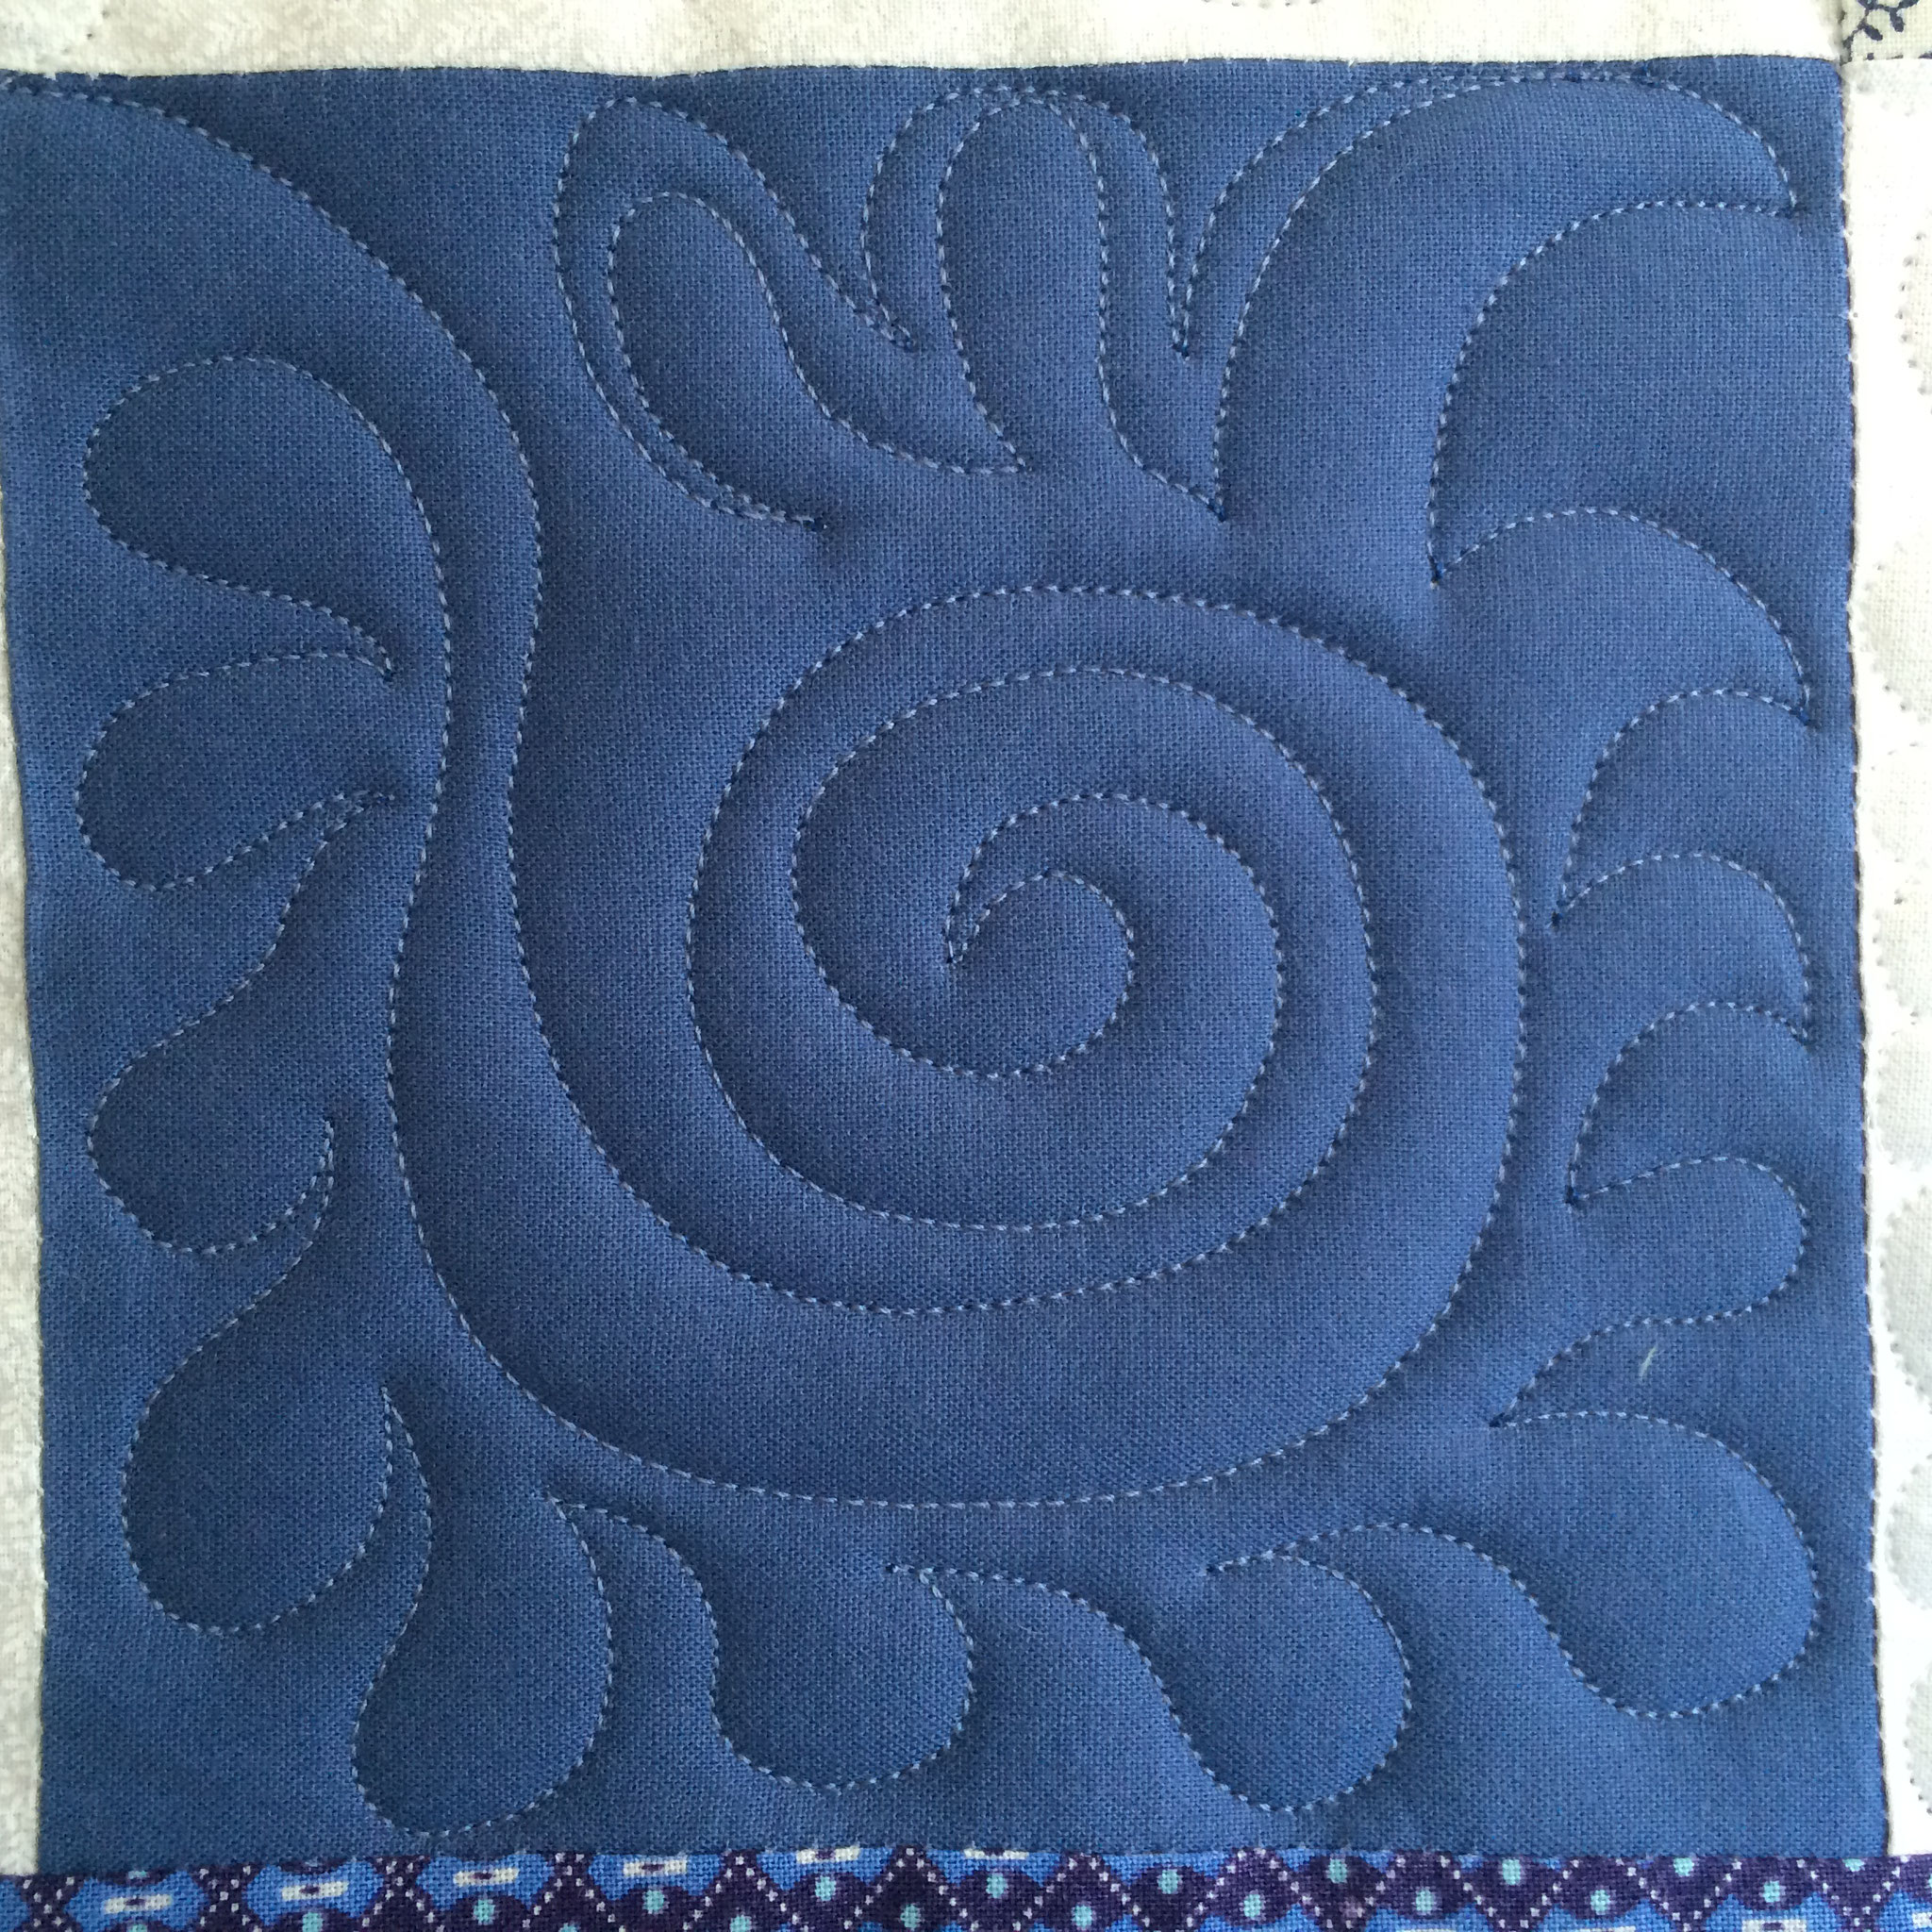 Sur les carrés bleus, des spirale et "plumes".